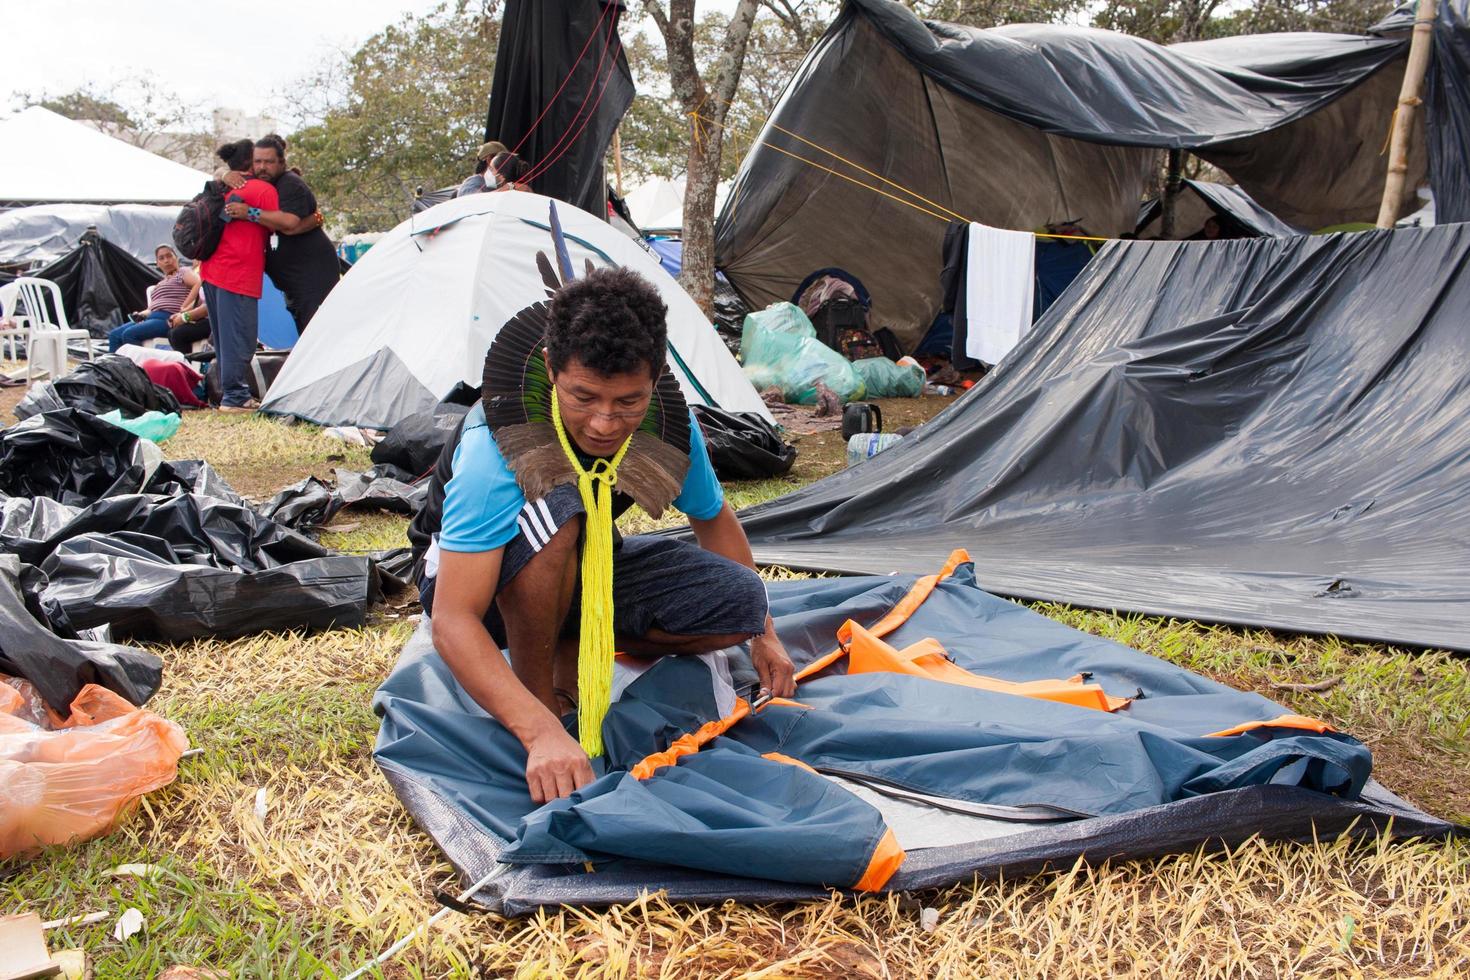 brasilia, df, brésil-14 avril 2022 les séquelles du mouvement acampamento terra livre à brasilia, alors que l'ingénieux indien commence à faire ses valises et à rentrer chez lui photo